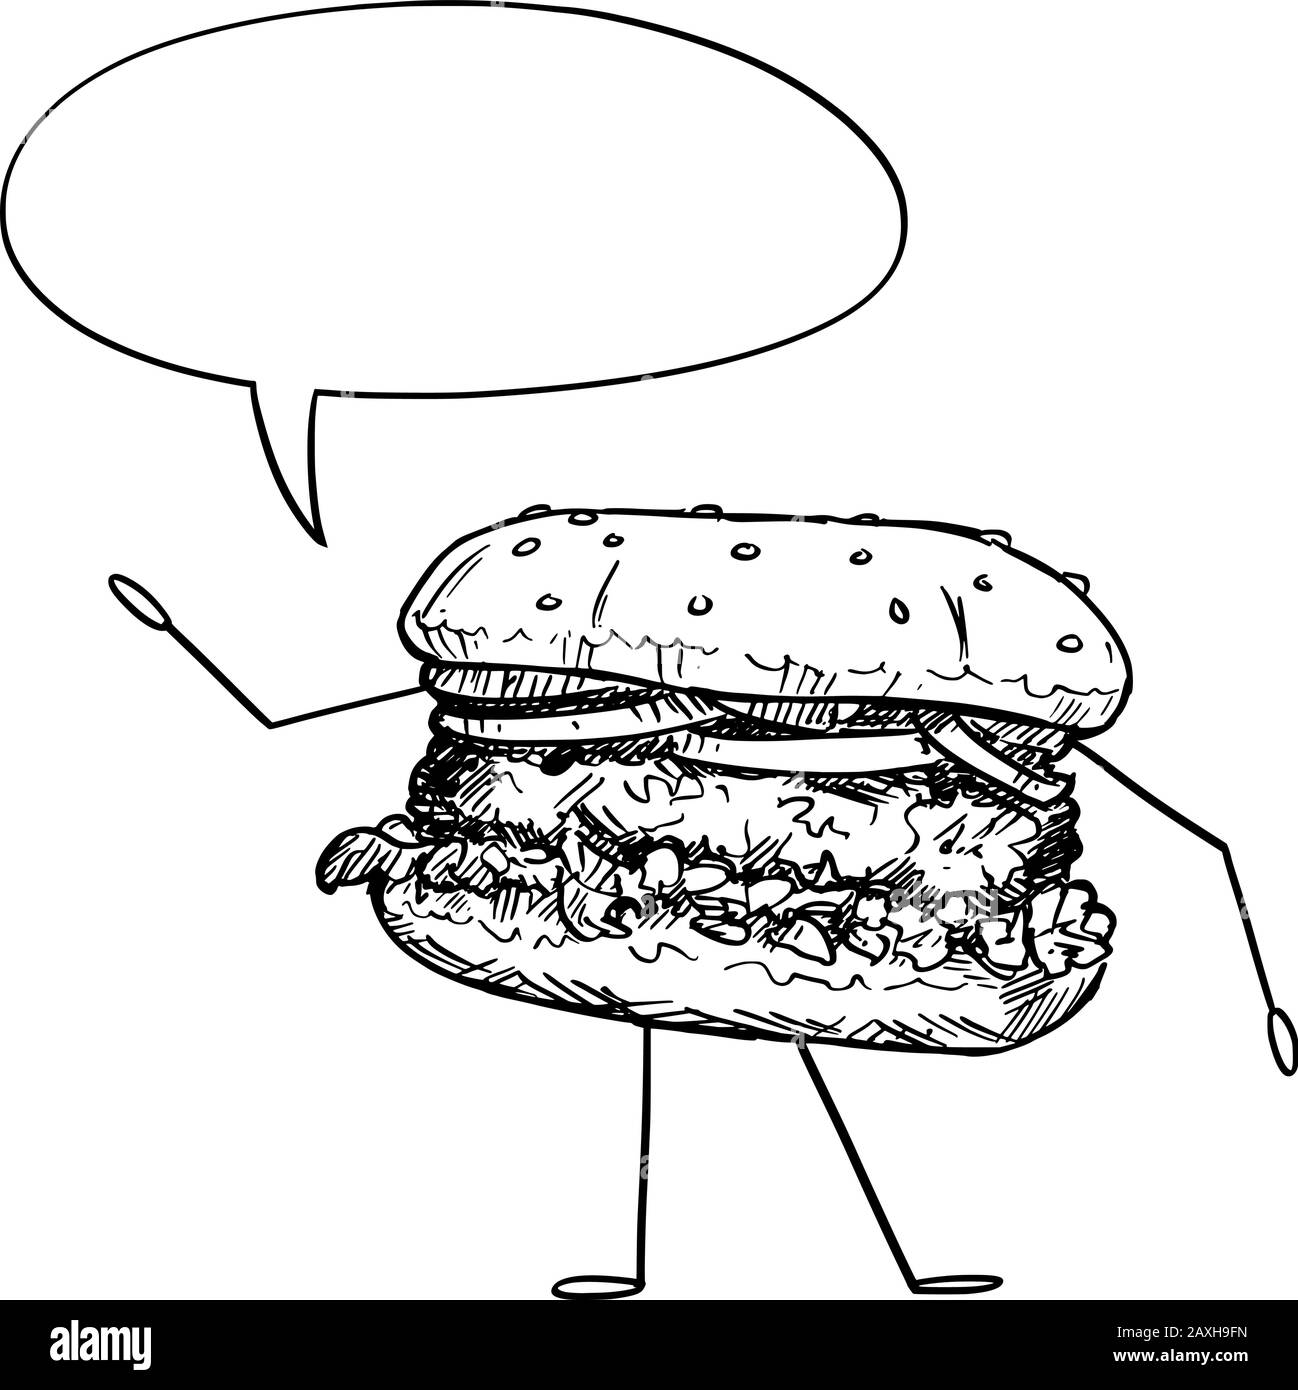 Vektorgrafiken von Cartoon-Hamburgern oder Burger-Charakter mit Sprechblase. Gesunder Lebensstil und Werbung für Junk- oder Fast-Food-Werbung oder Marketingdesign. Stock Vektor